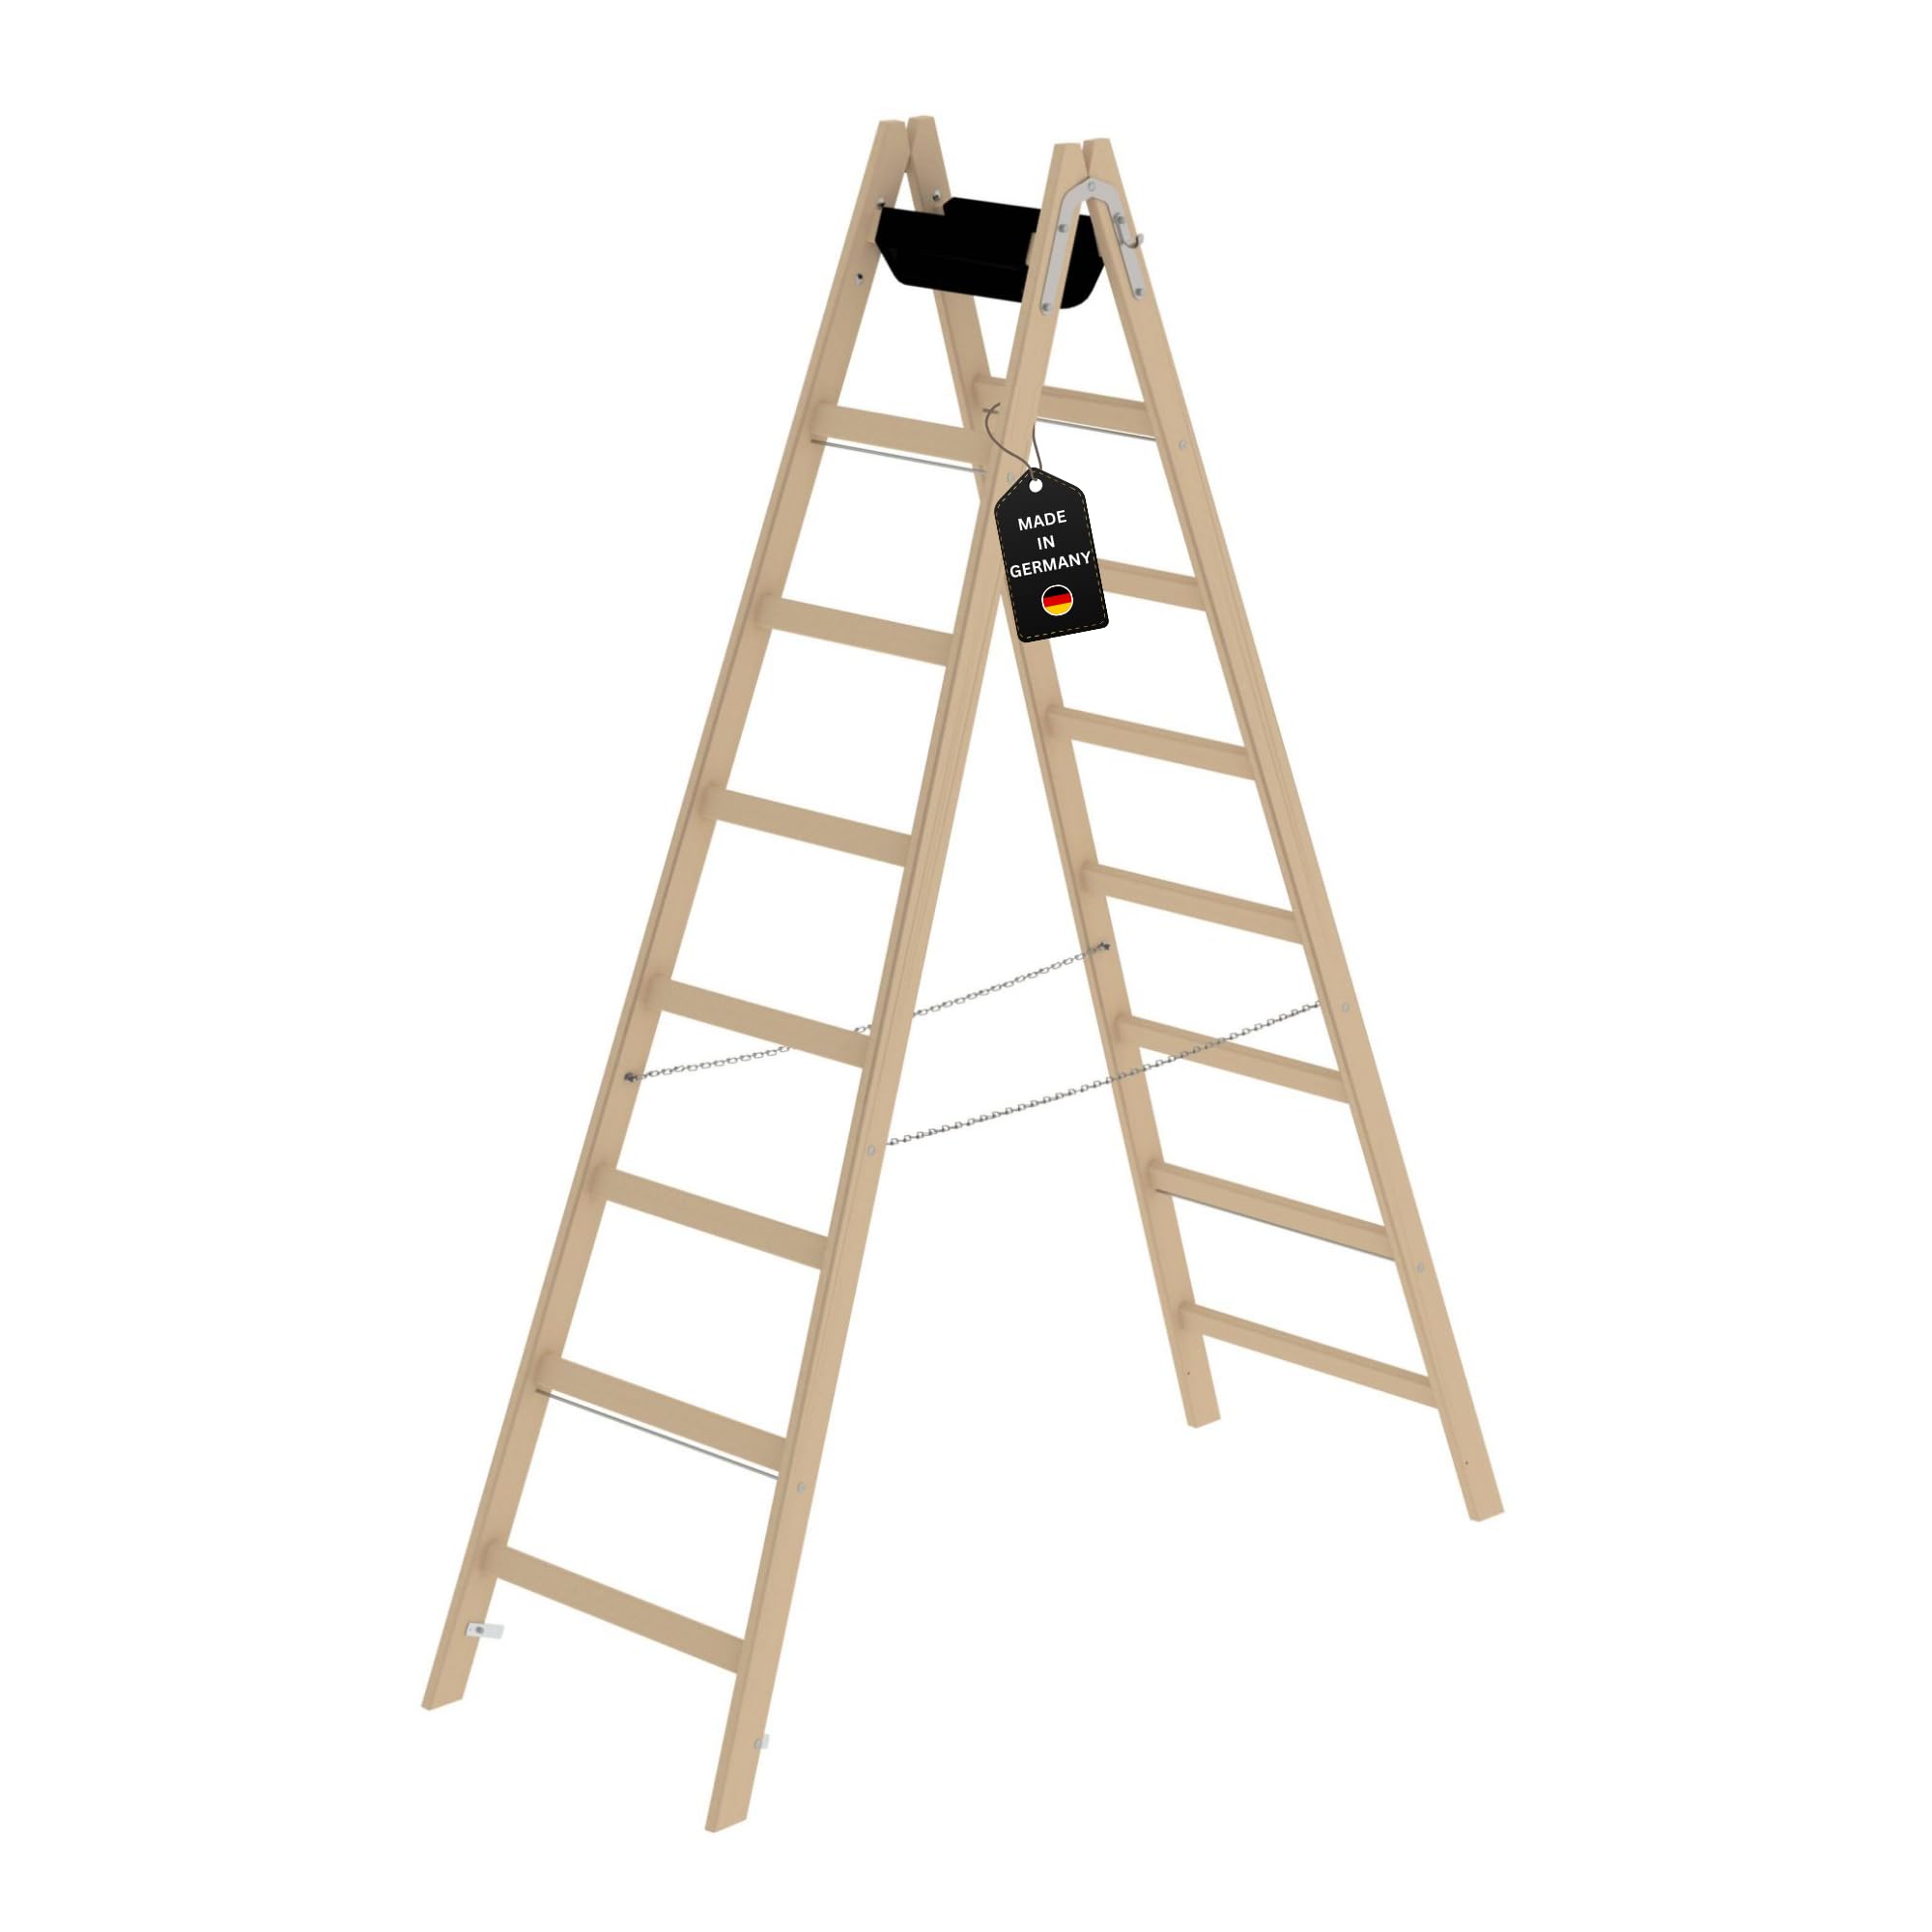 PROREGAL Sprossen-Stehleiter Holz mit Werkzeugablage | 2x8 Sprossen | Leiter, Teleskopleiter, Trittleiter, Bockleiter, Sprossen-Doppelleiter